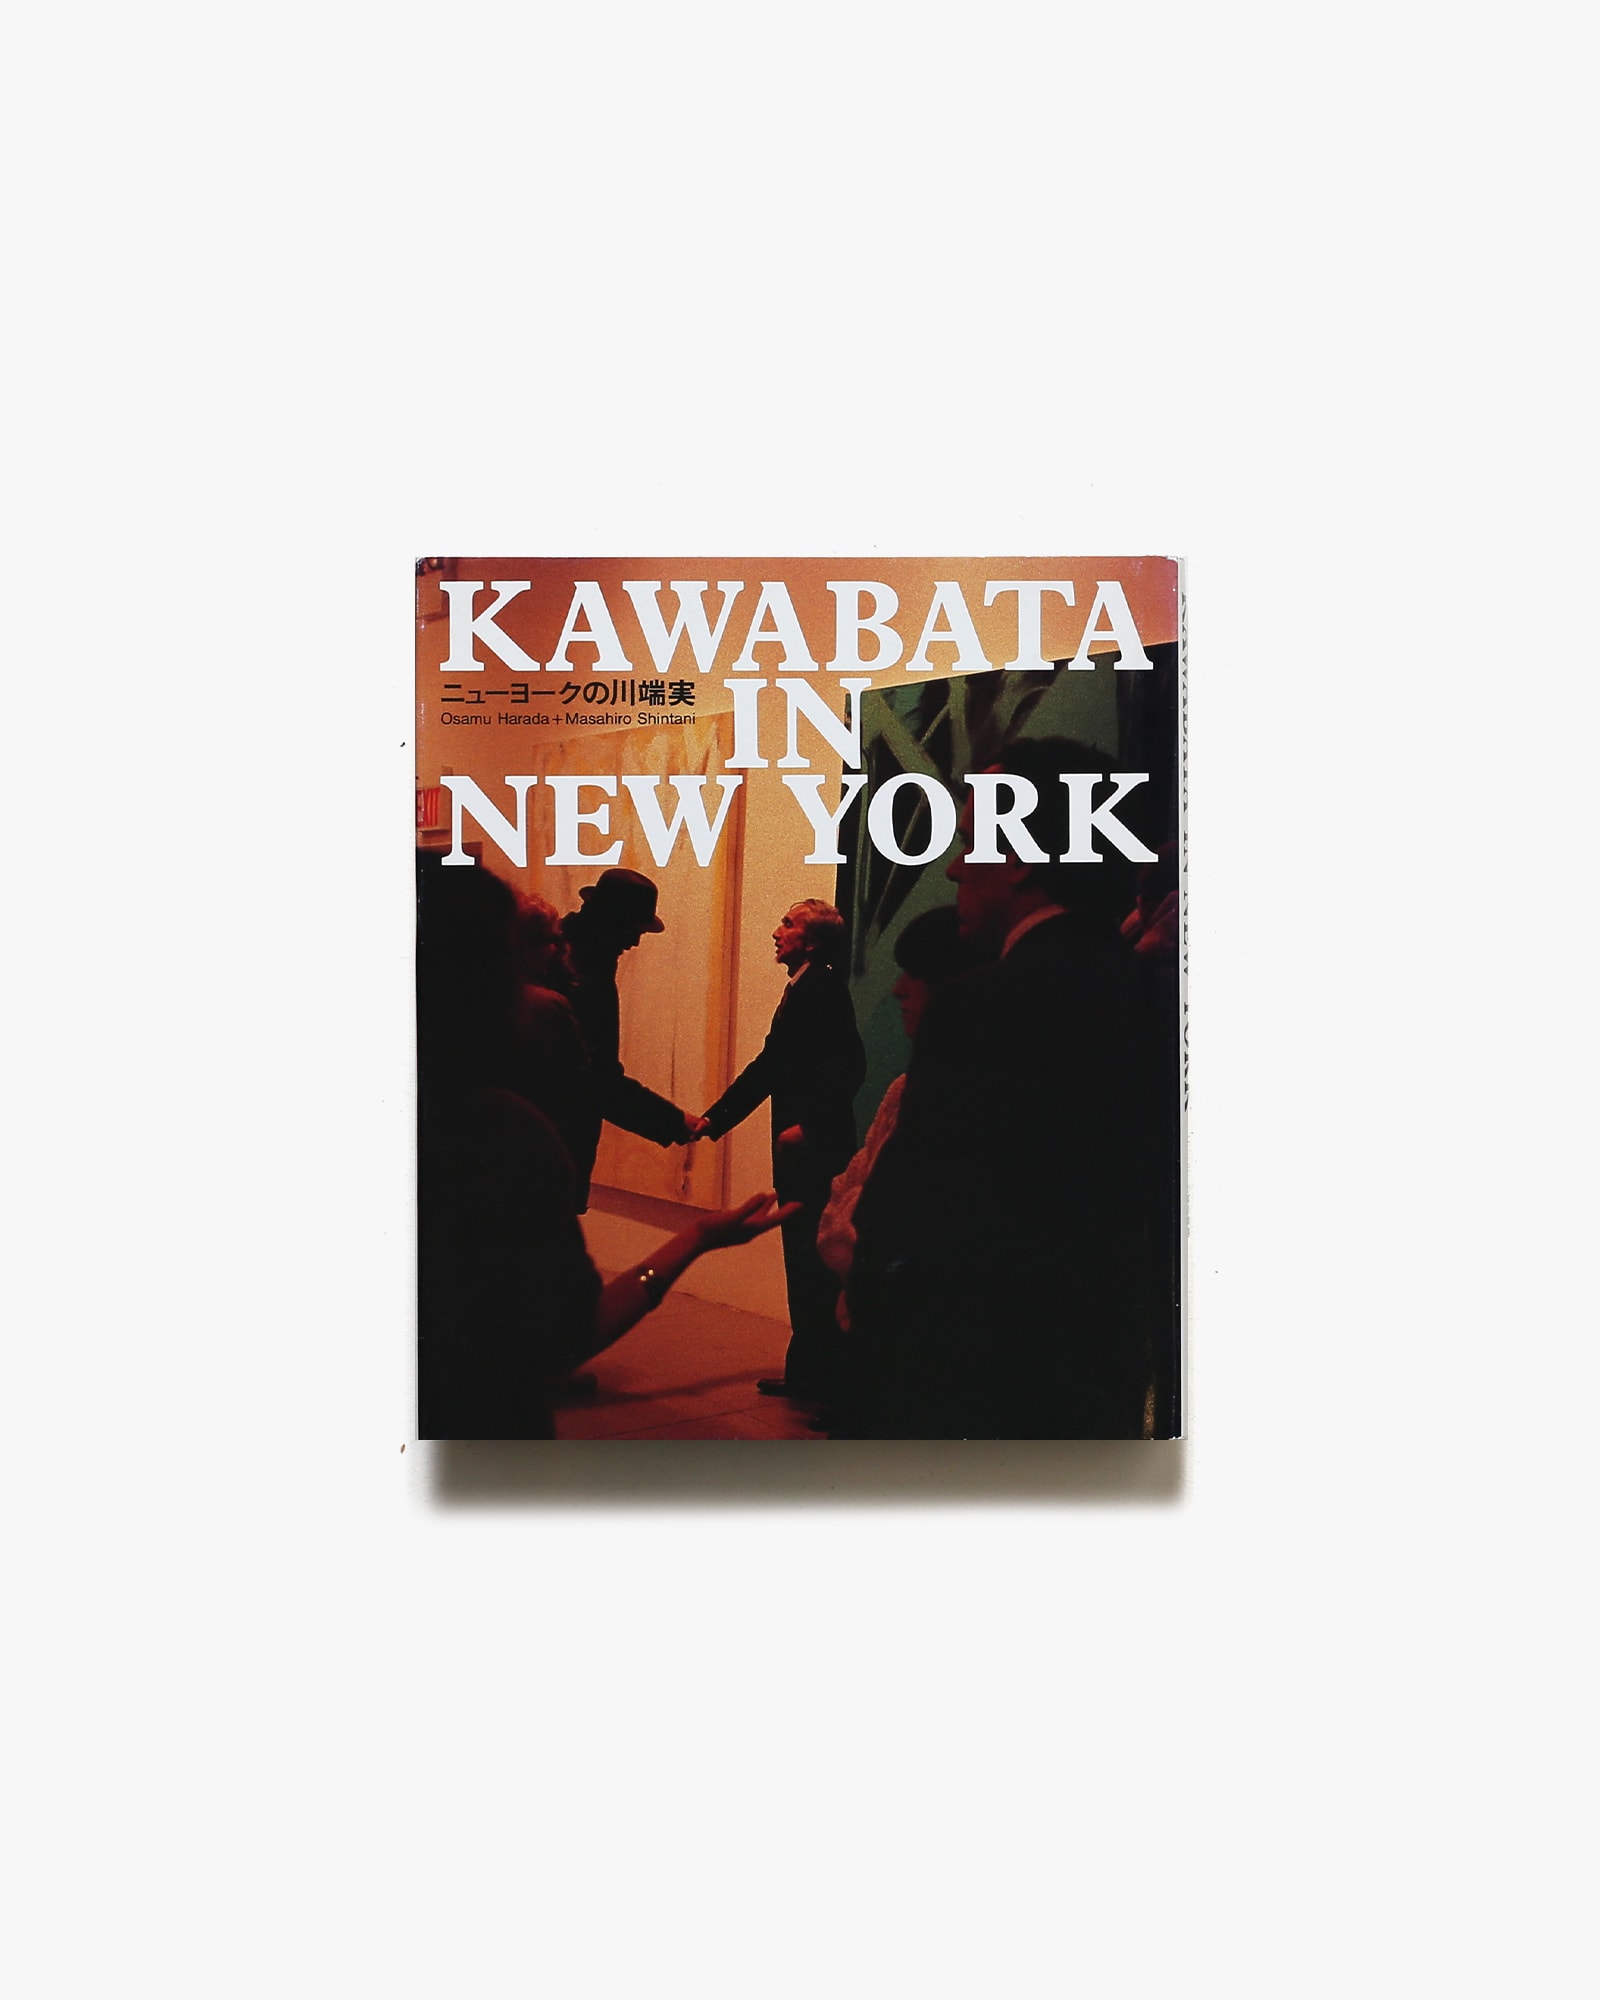 Kawabata in Neu York ニューヨークの川端実